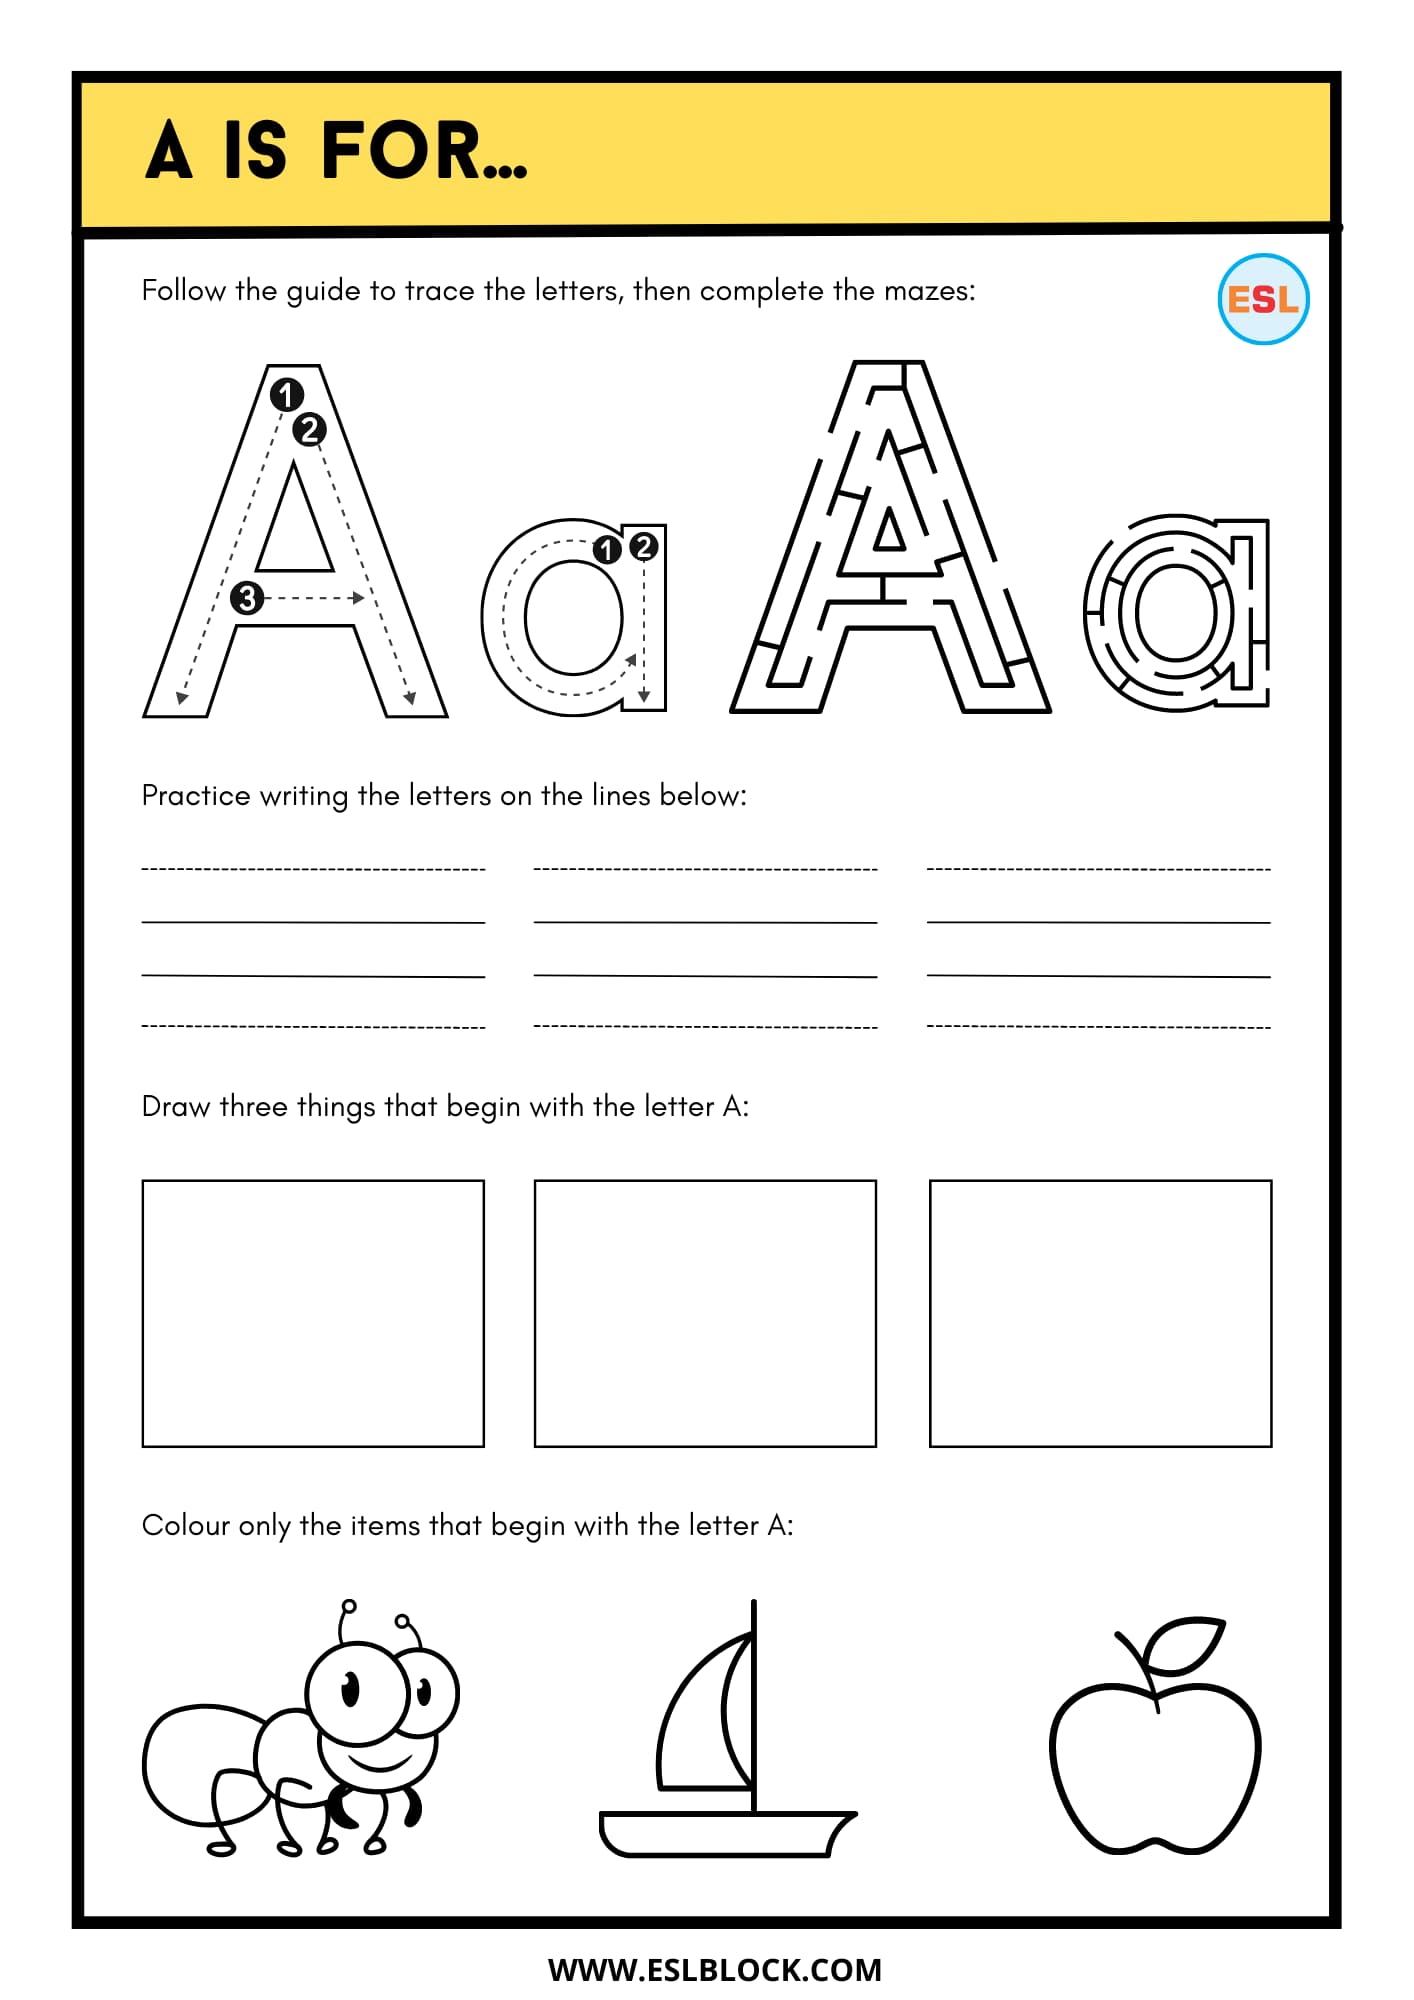 Free Worksheets, Kindergarten Worksheets, Preschool Worksheets, Tracing the Letter A, Tracing the Letter A Worksheets, Tracing Worksheets, Worksheets